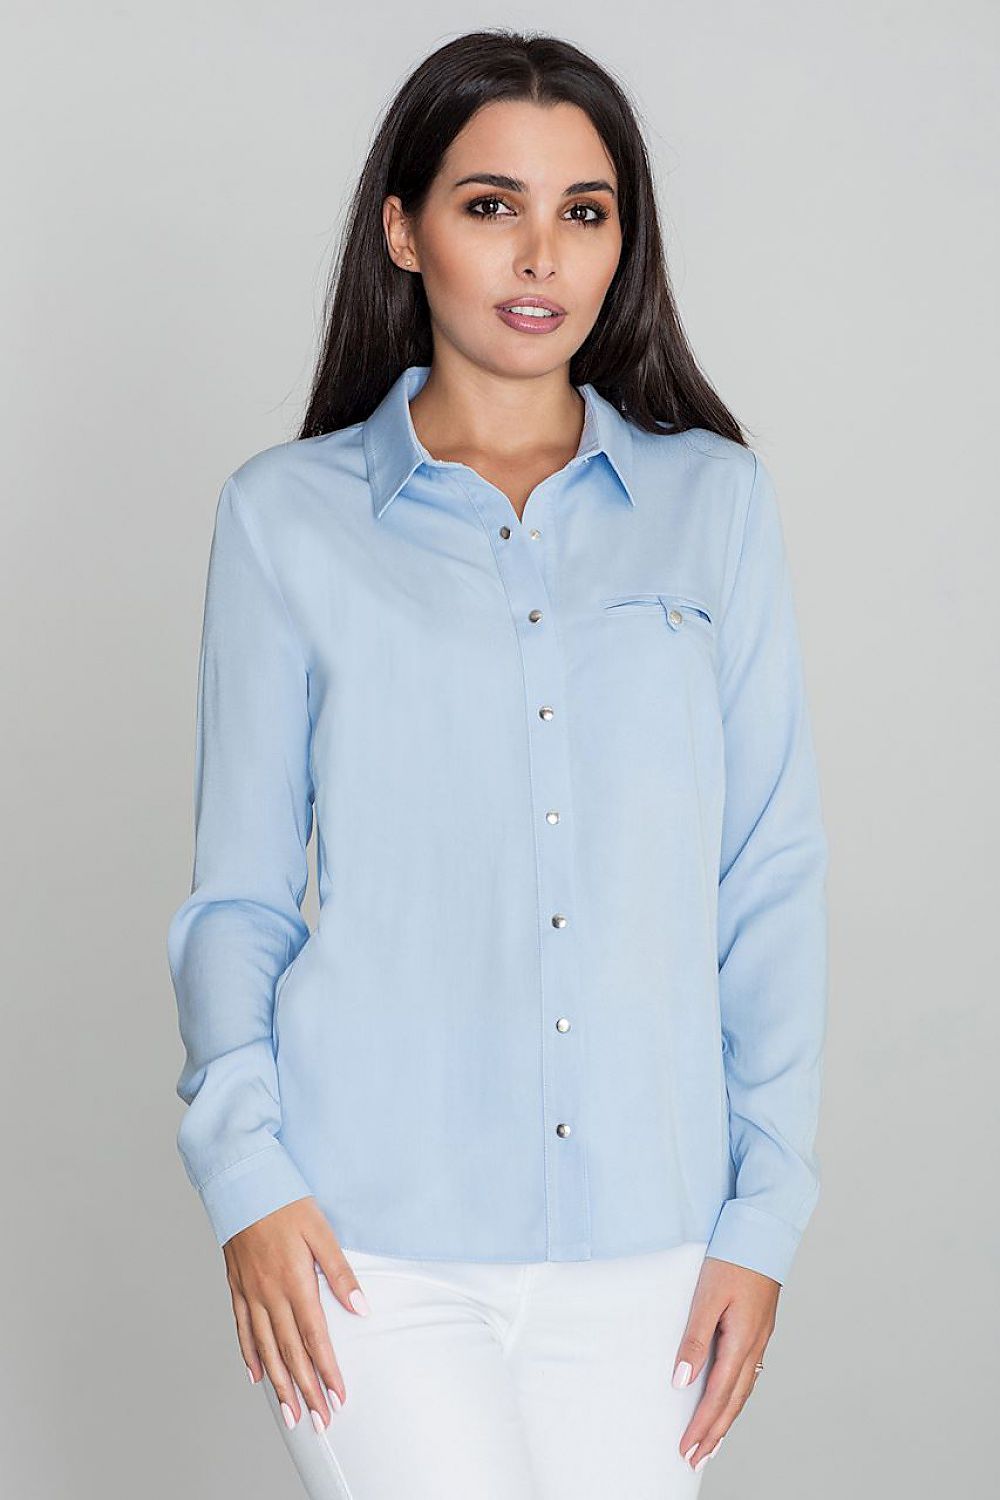 Long Sleeve Shirt Model 111030 Figl